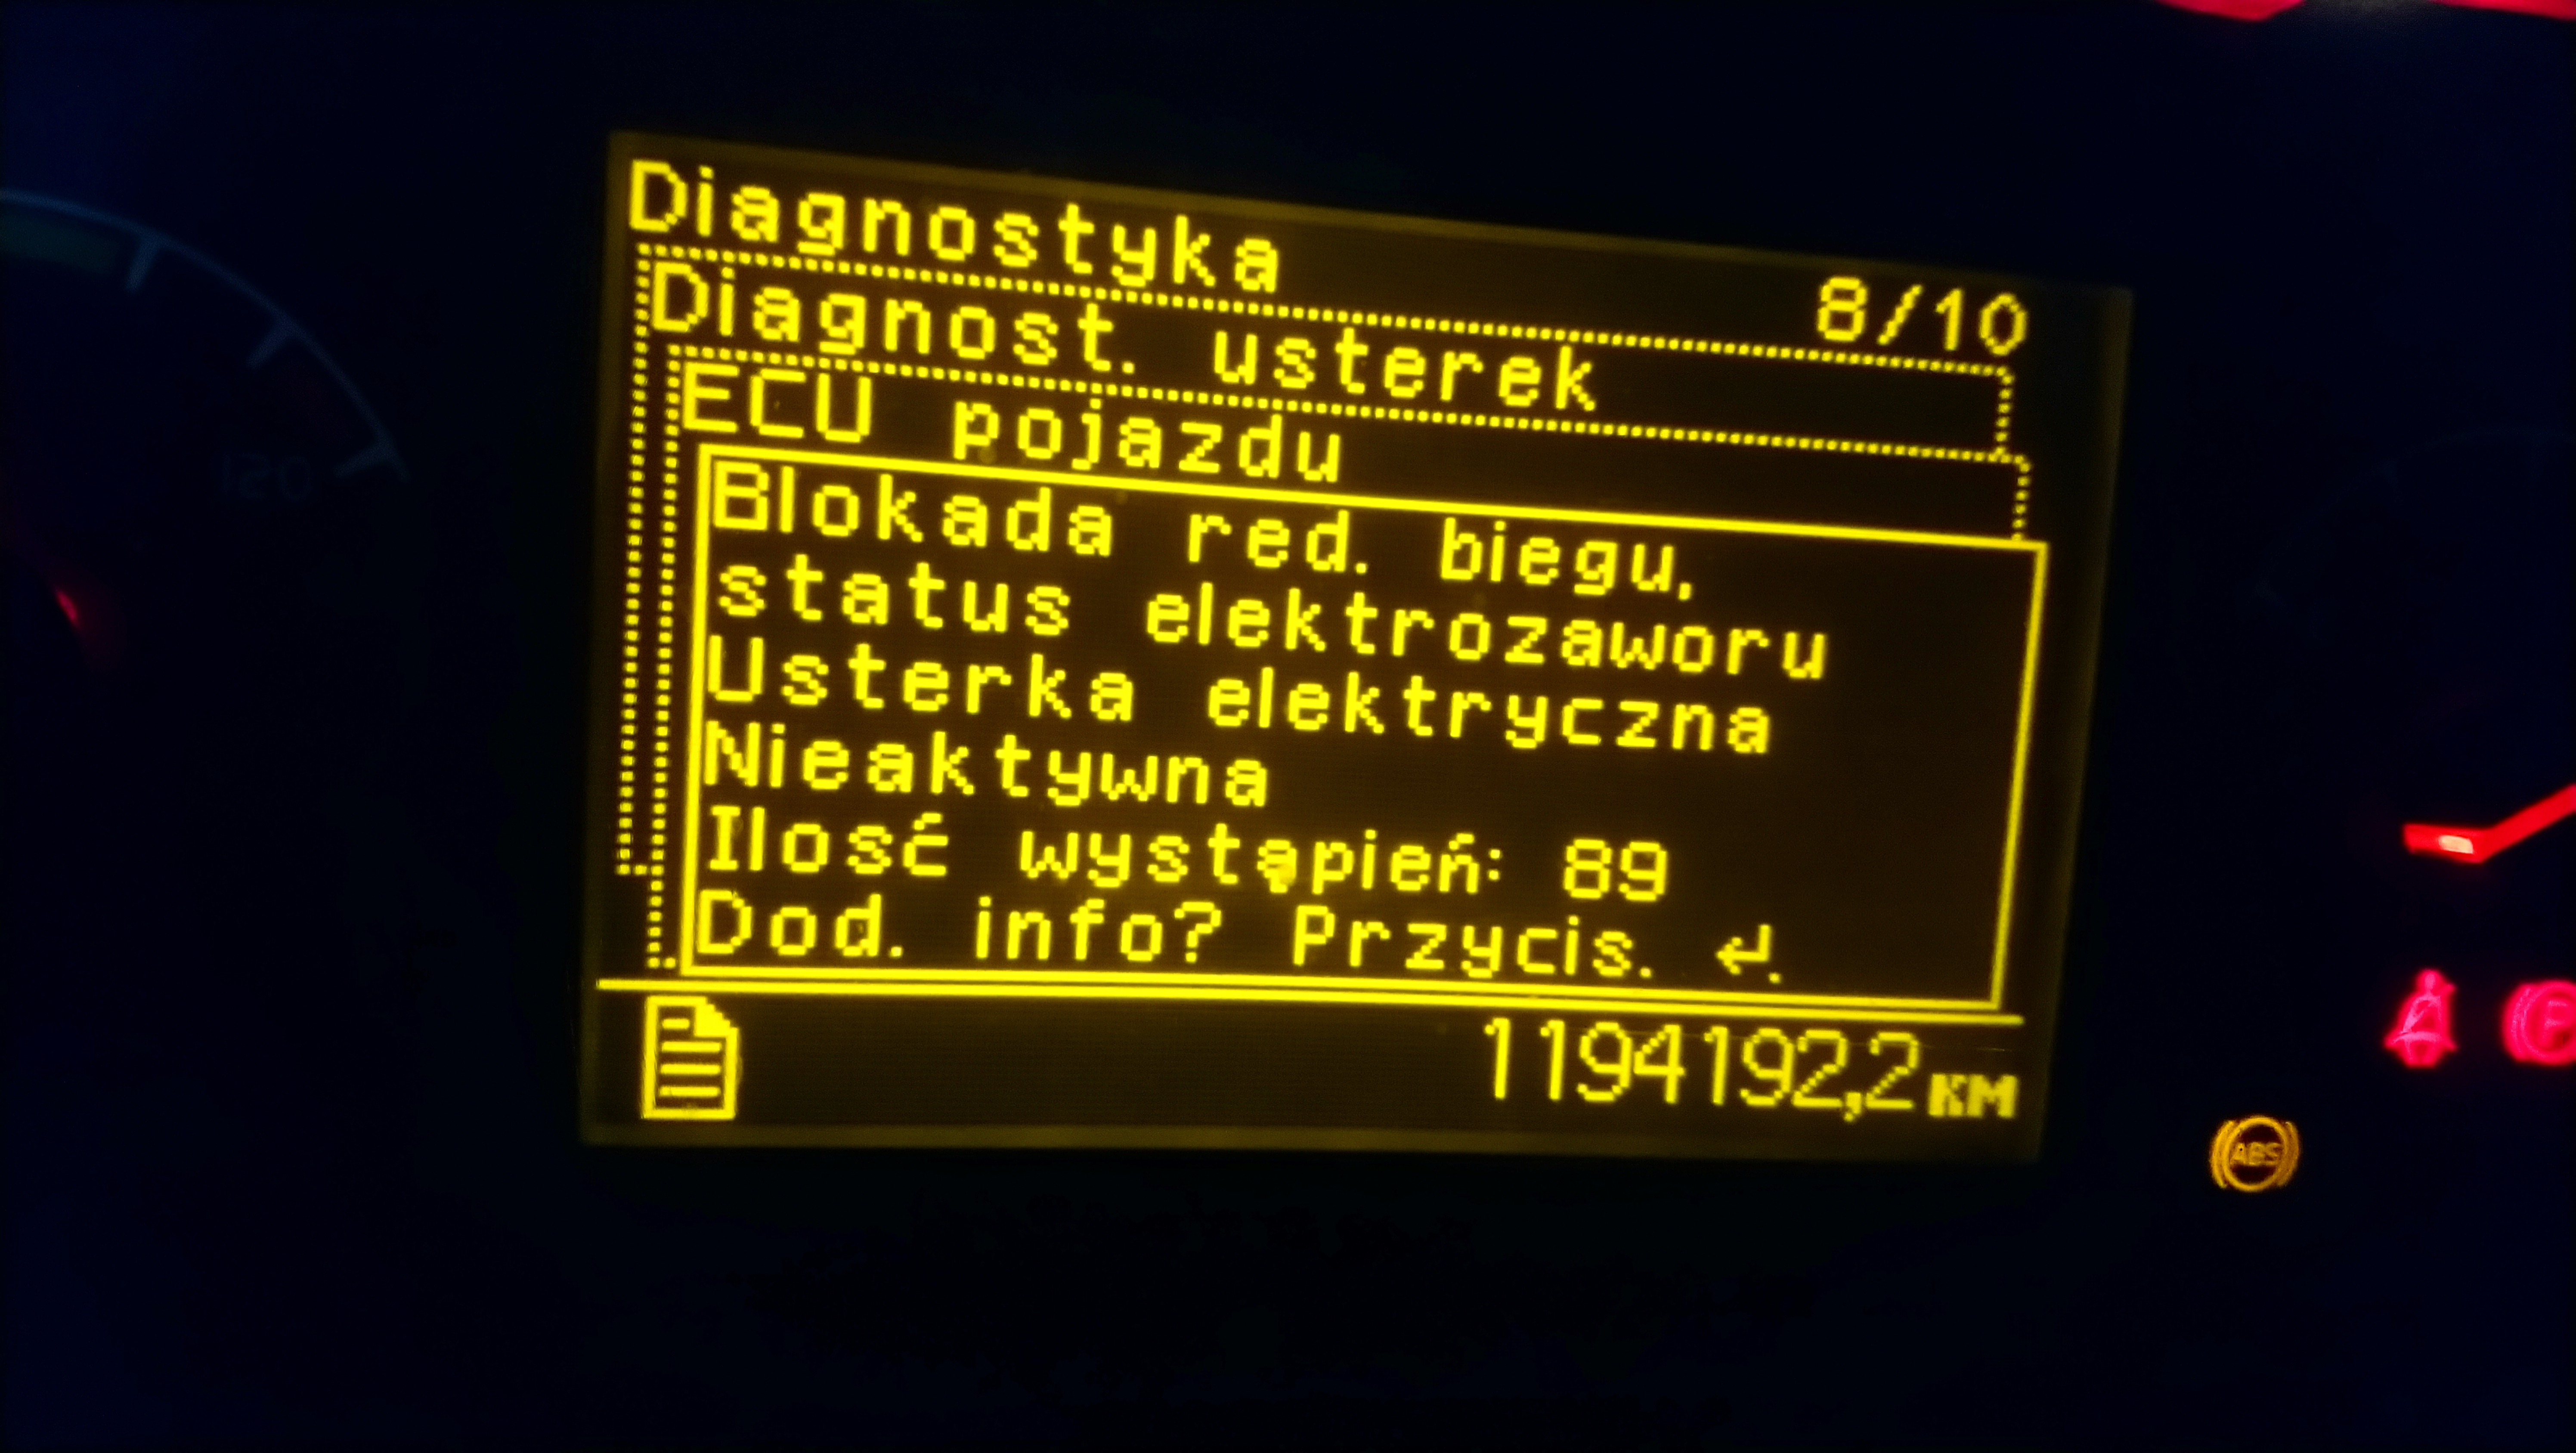 Rozwiązano] Błąd Volvo Fh 12 2005 460 - Elektroda.pl